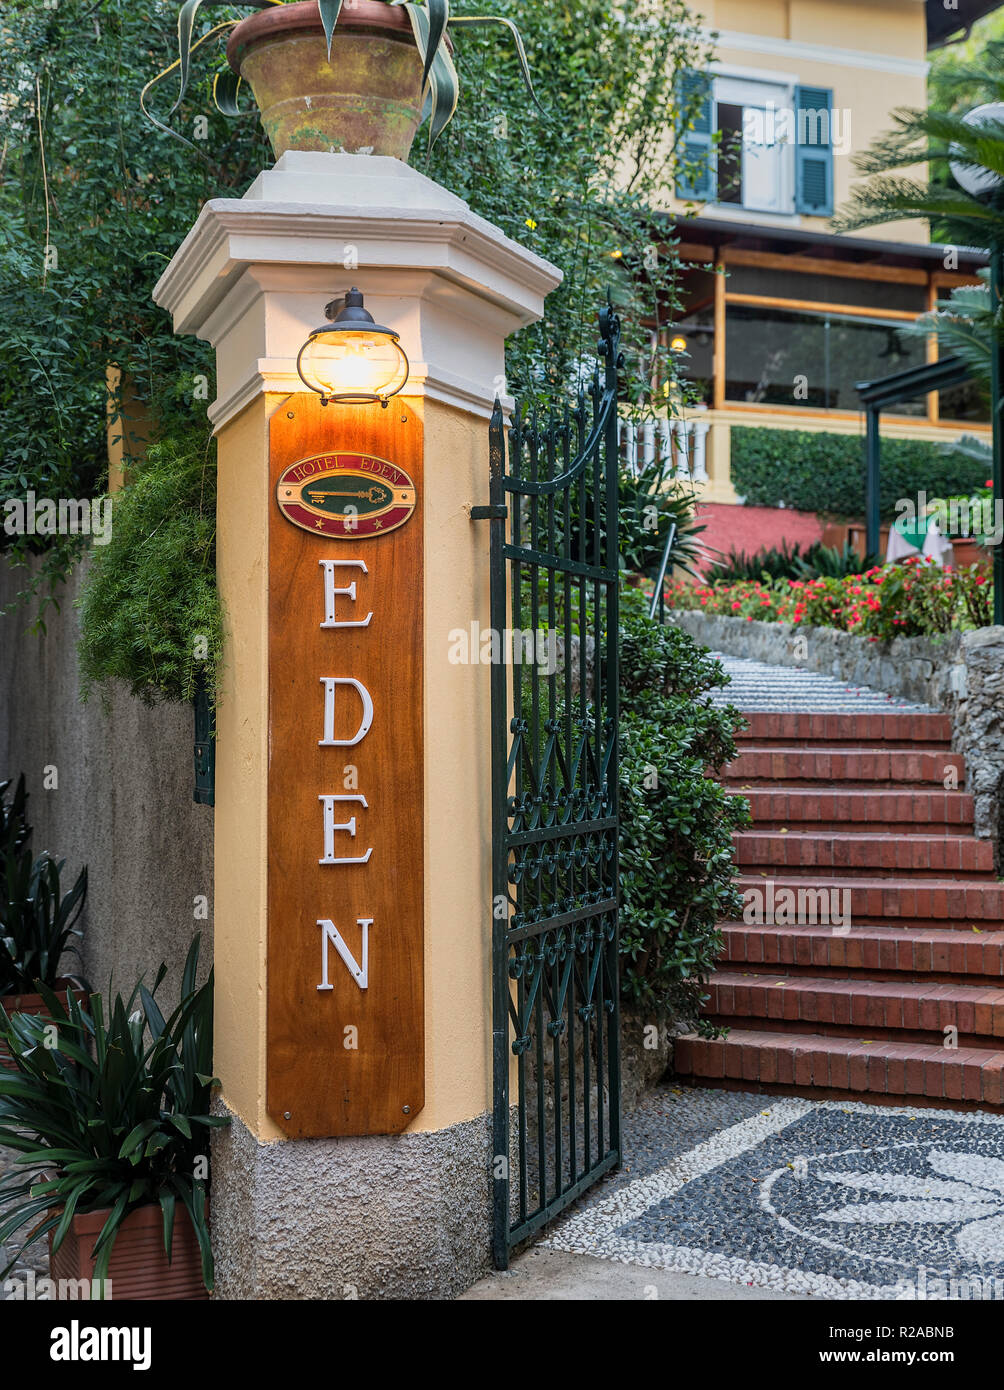 Eden boutique hotel in the town of Portofino, Italy. Stock Photo